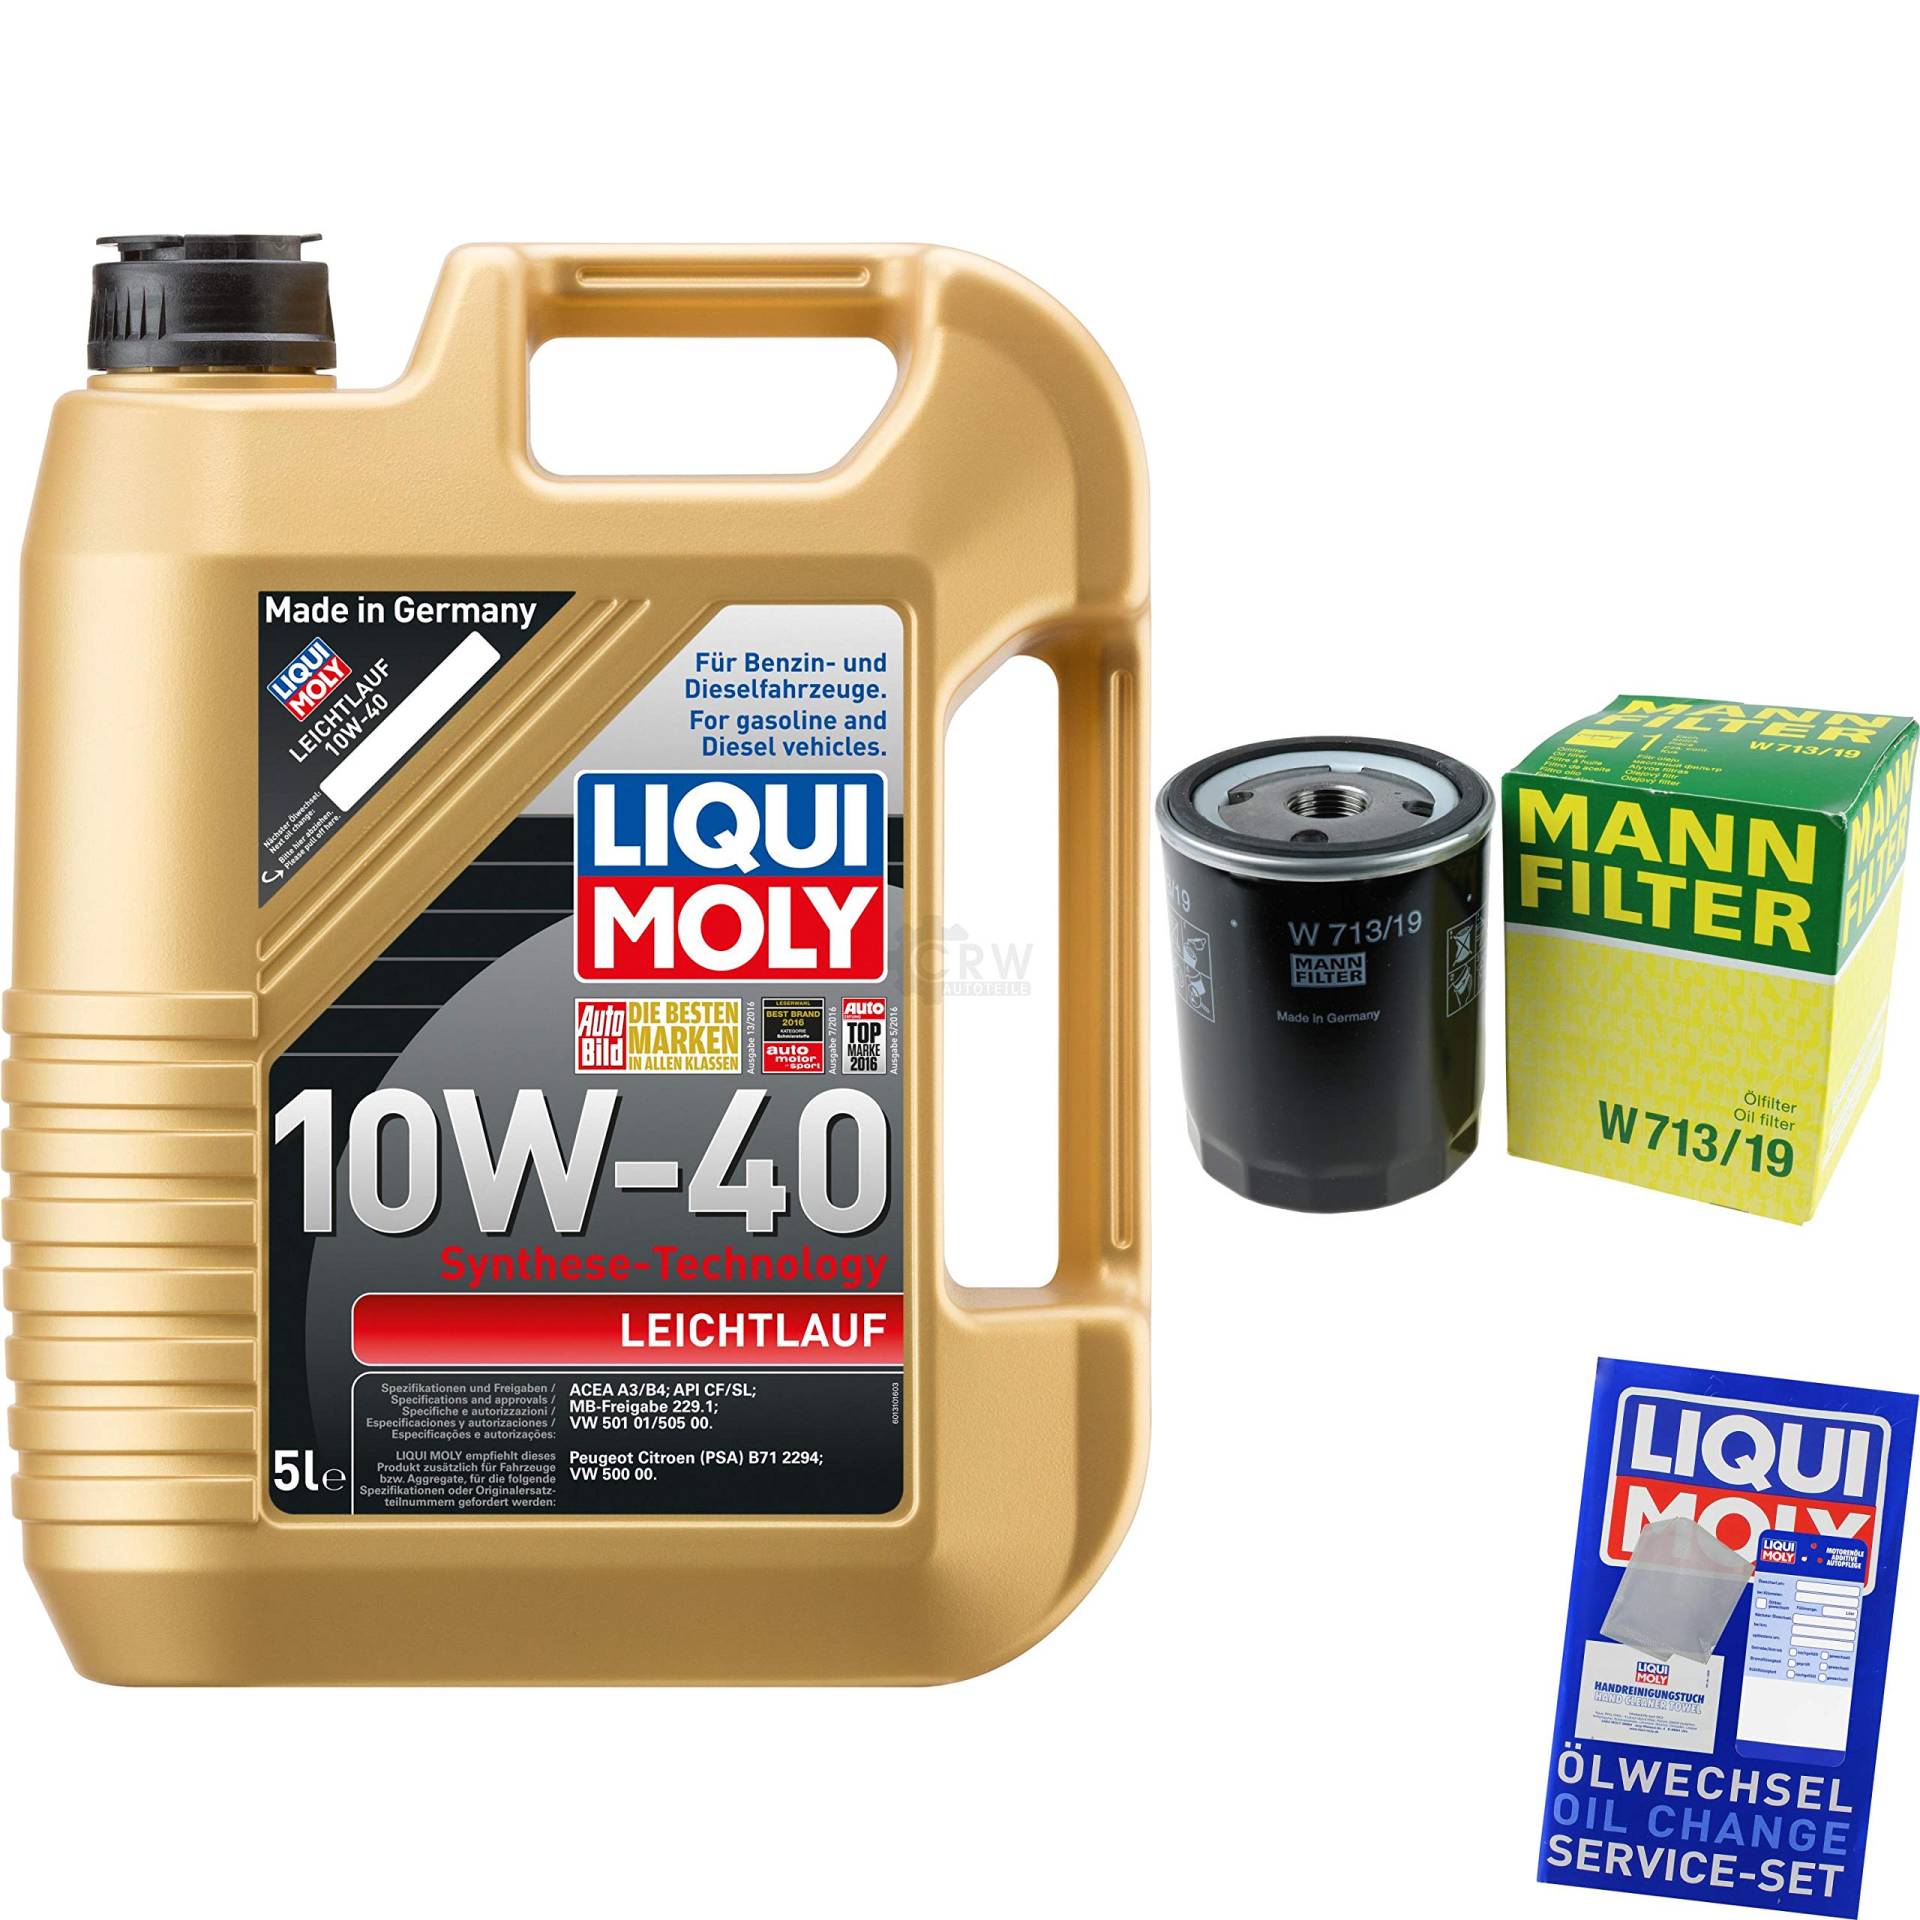 Filter Set Inspektionspaket 5 Liter Motoröl Leichtlauf 10W-40 MANN-FILTER Ölfilter von Diederichs